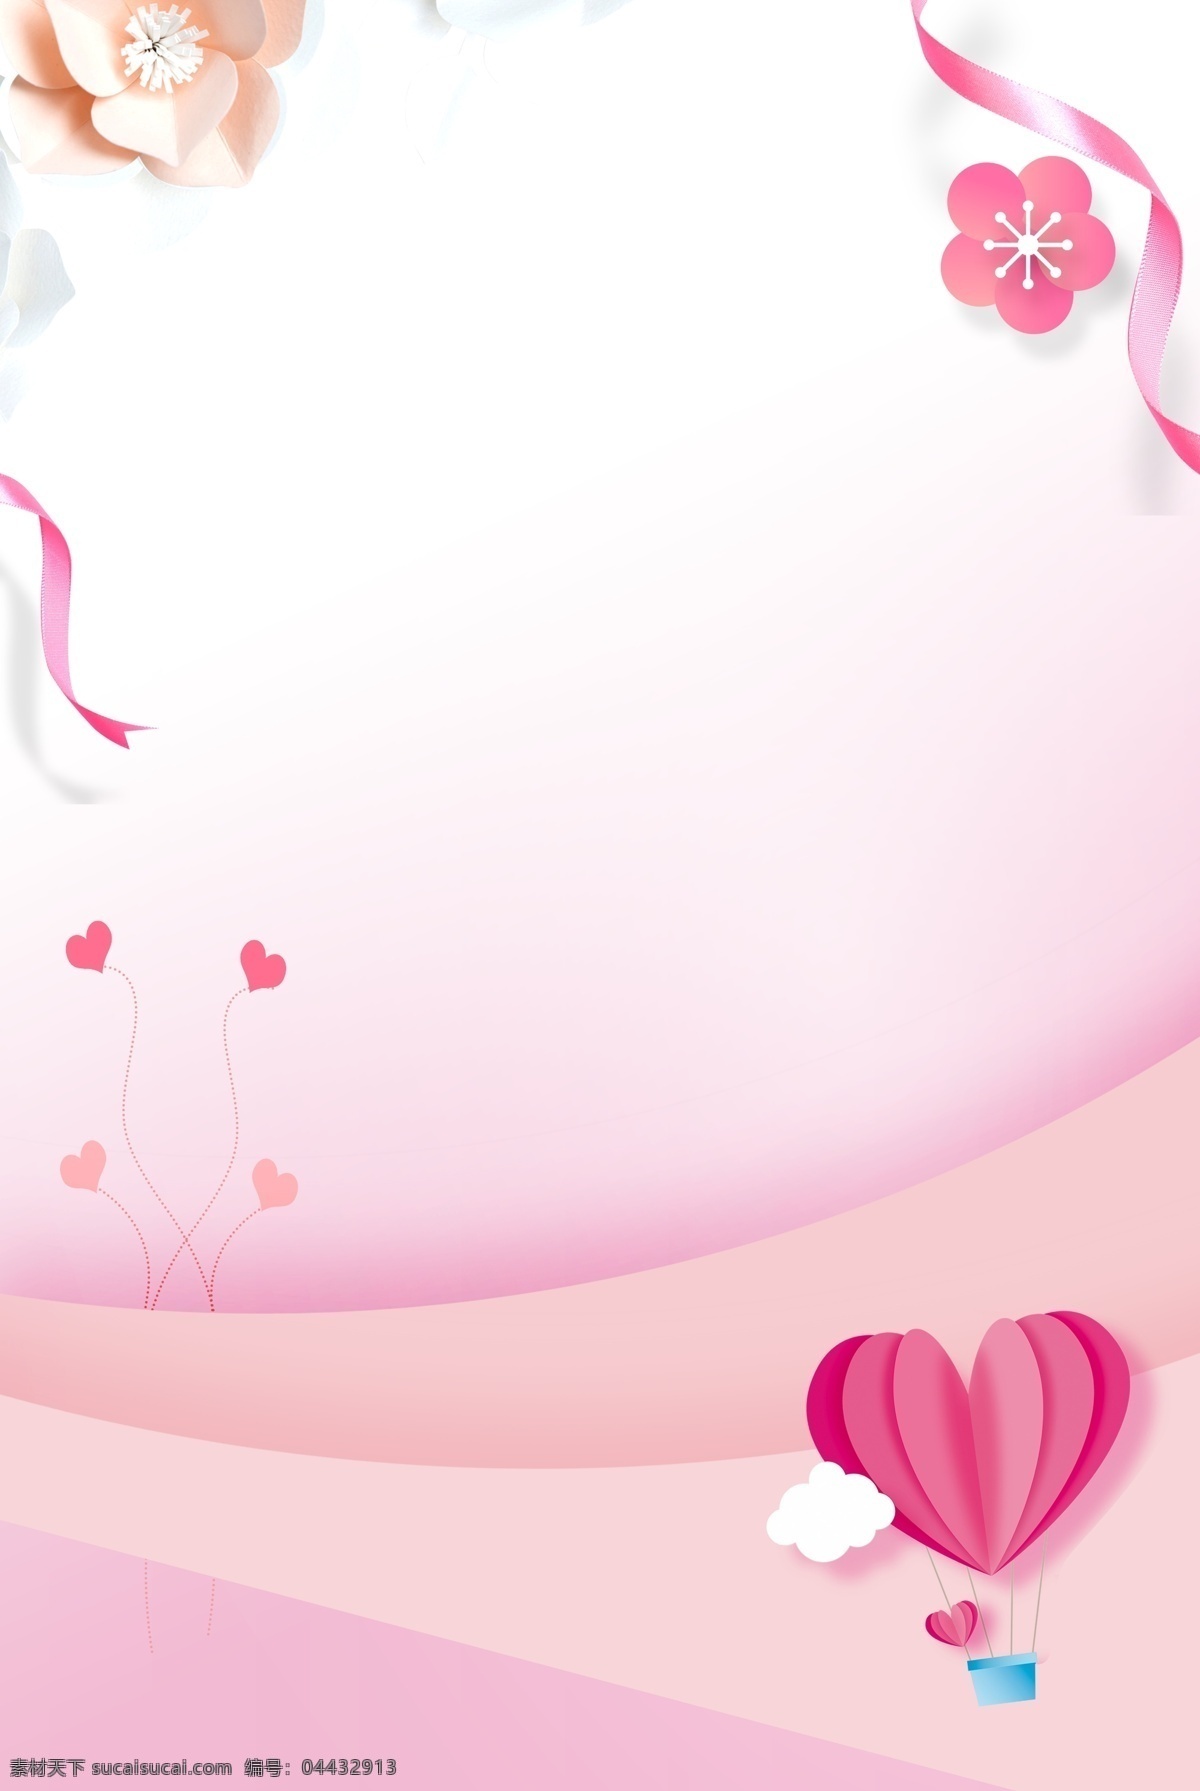 七夕 情人节 活动 海报 促销 活动宣传 温馨 浪漫 简约 清新 热气球